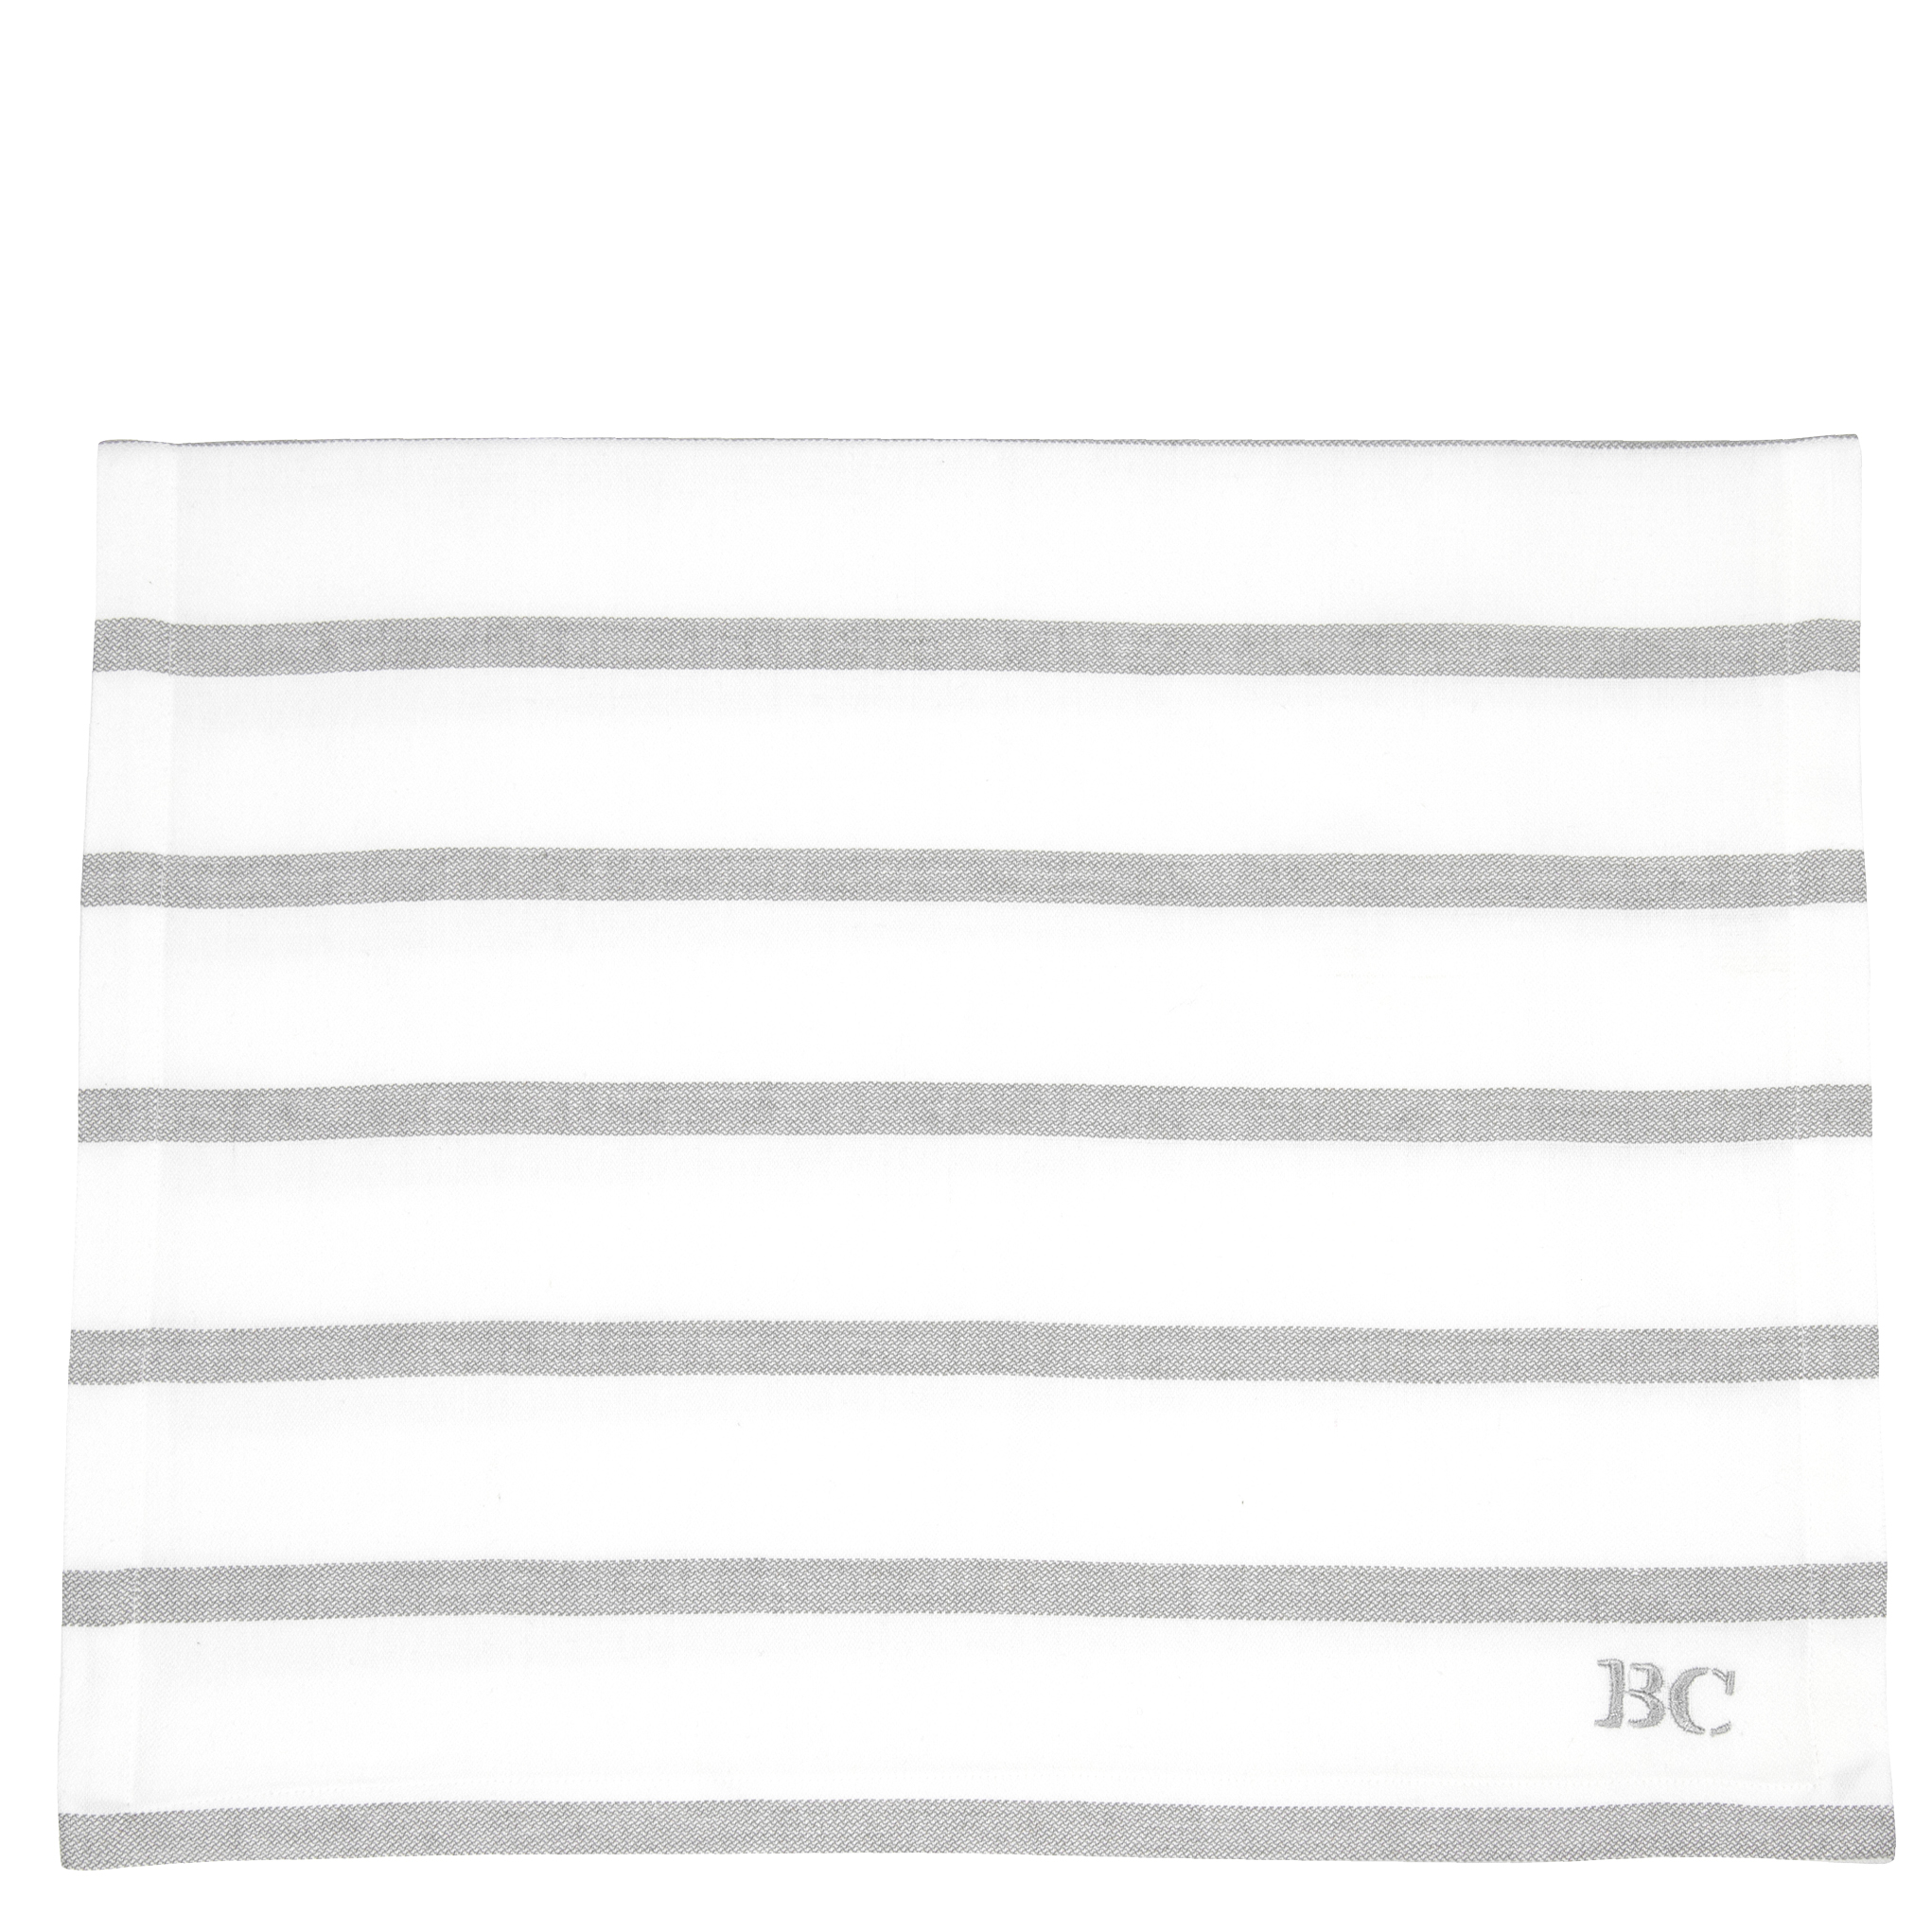 BC Tischläufer Streifen 50x160cm 100% Baumwolle weiß grau